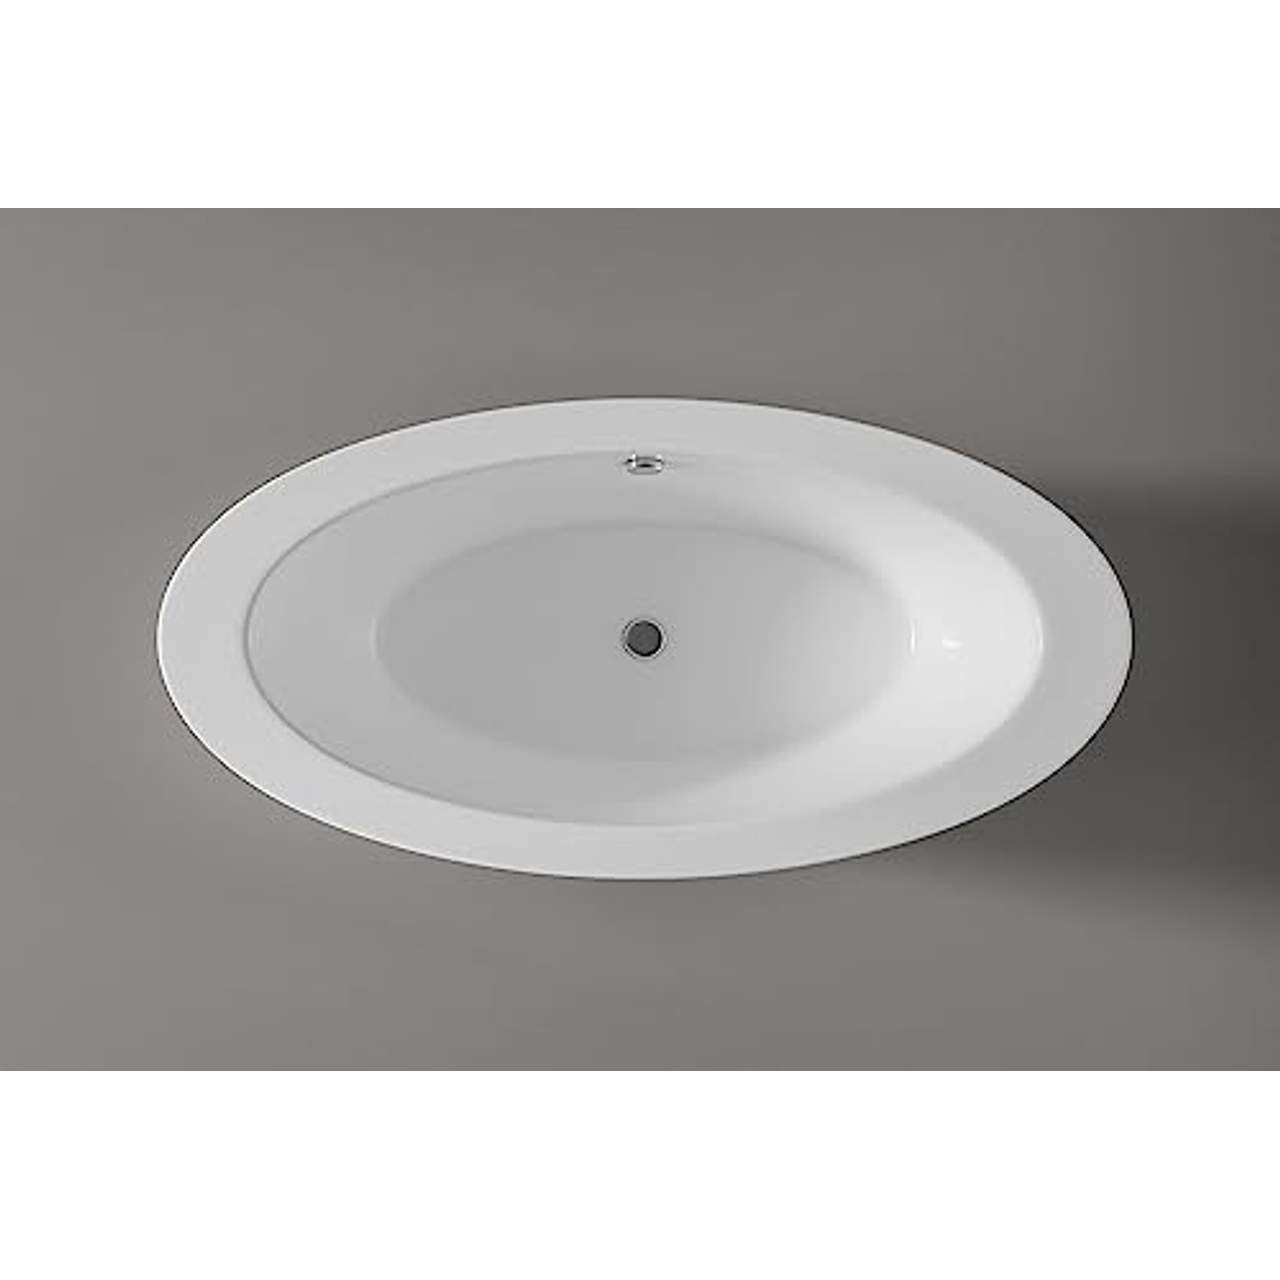 Freistehende Badewanne Modena Acryl weiß BS-859 185x91